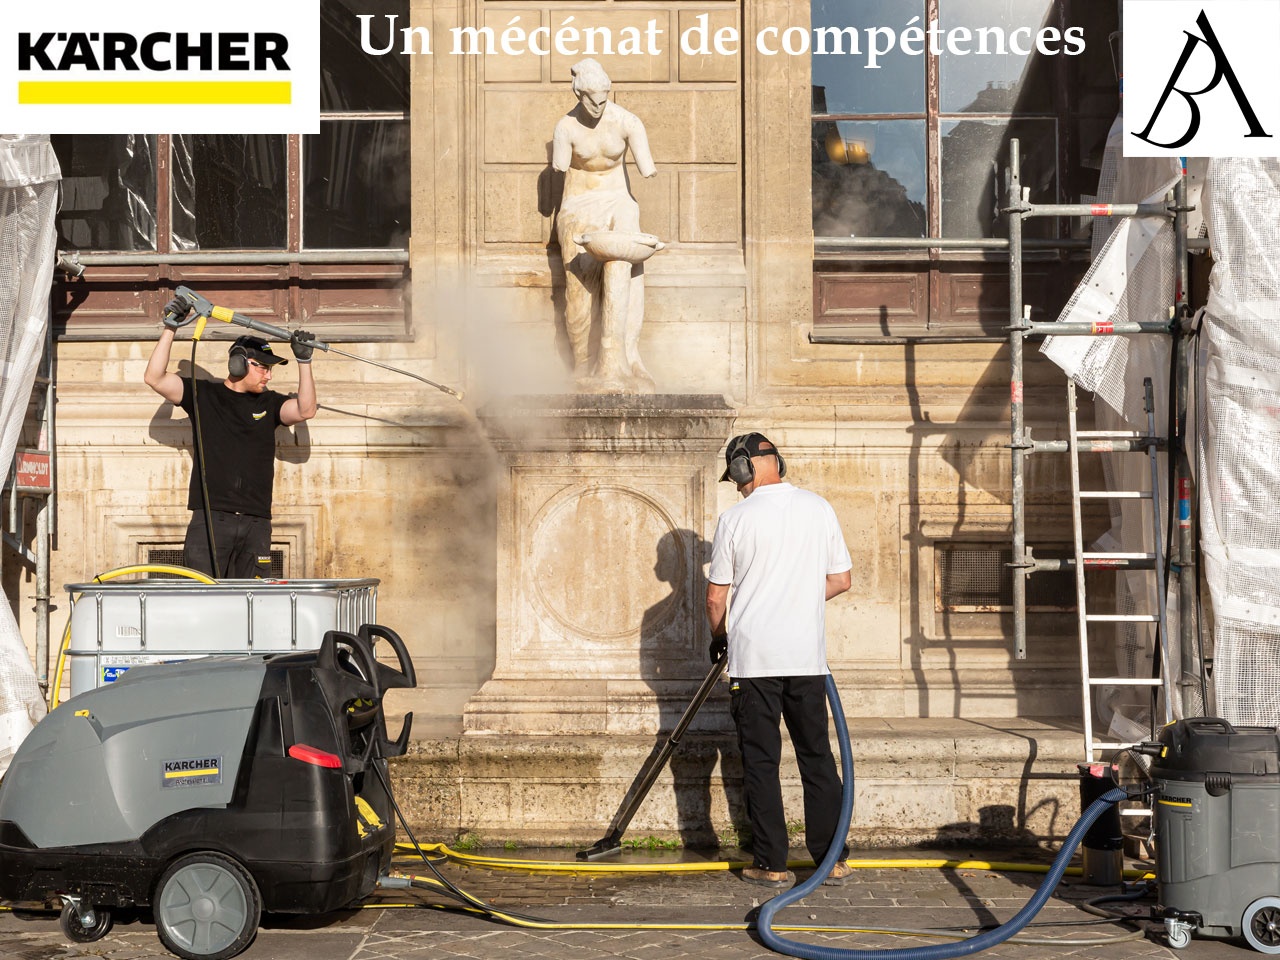 Kärcher, profondément engagé dans la préservation du patrimoine culturel restaure les statues des Beaux-Arts de Paris